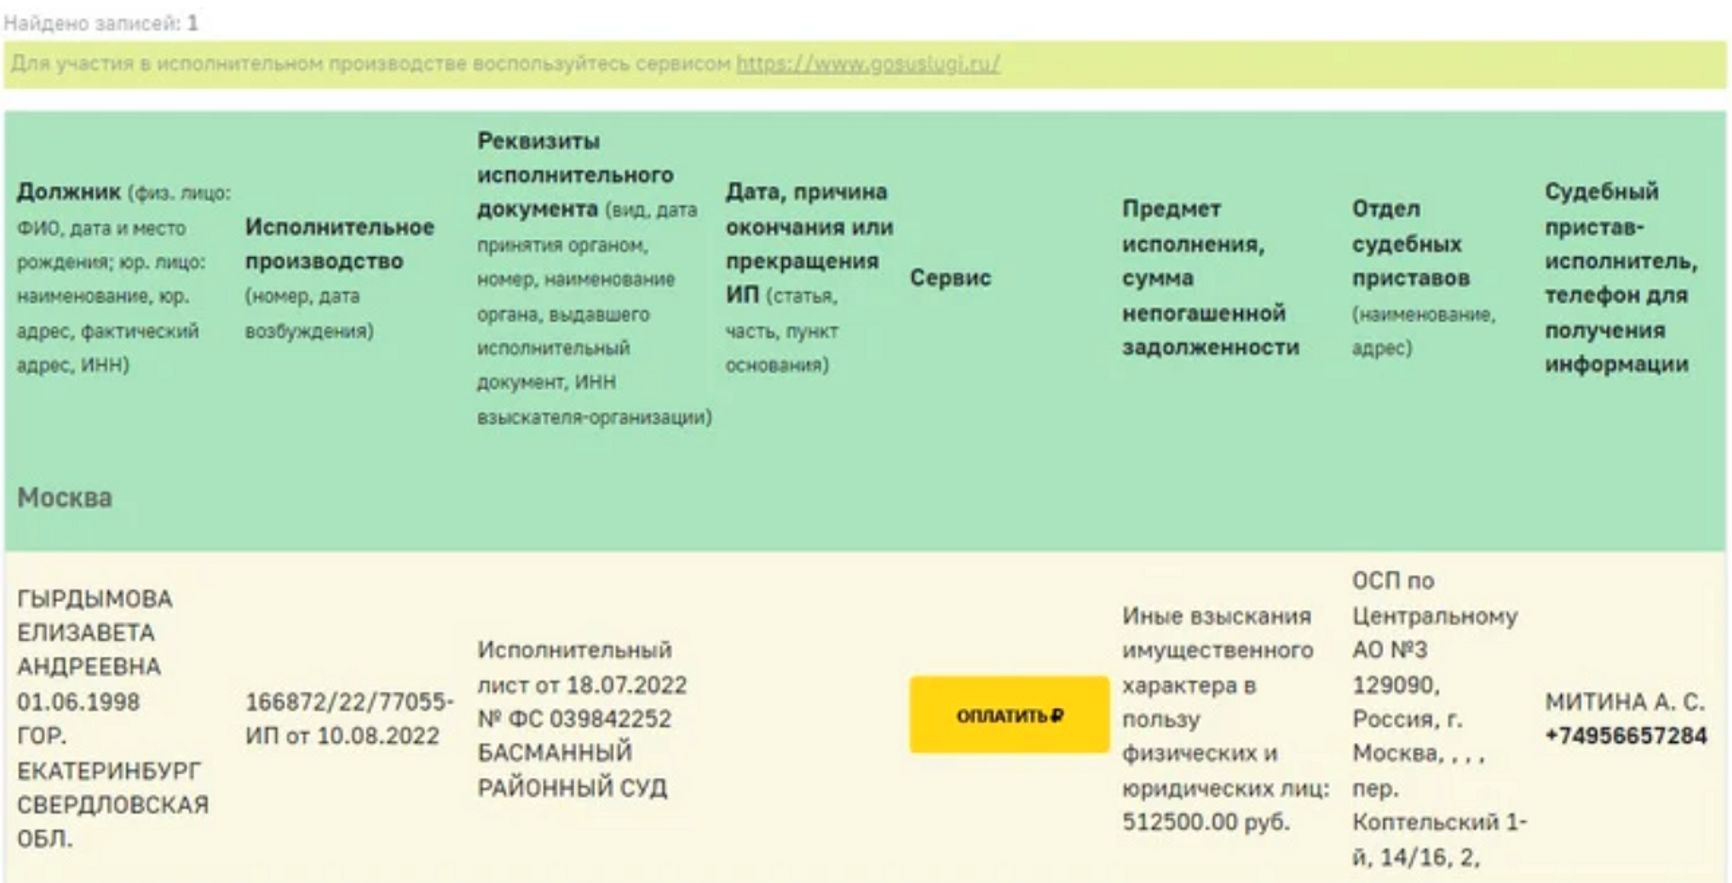 Певицу Монеточку объявили в розыск за неуплату штрафа в полмиллиона рублей Стасу Костюшкину